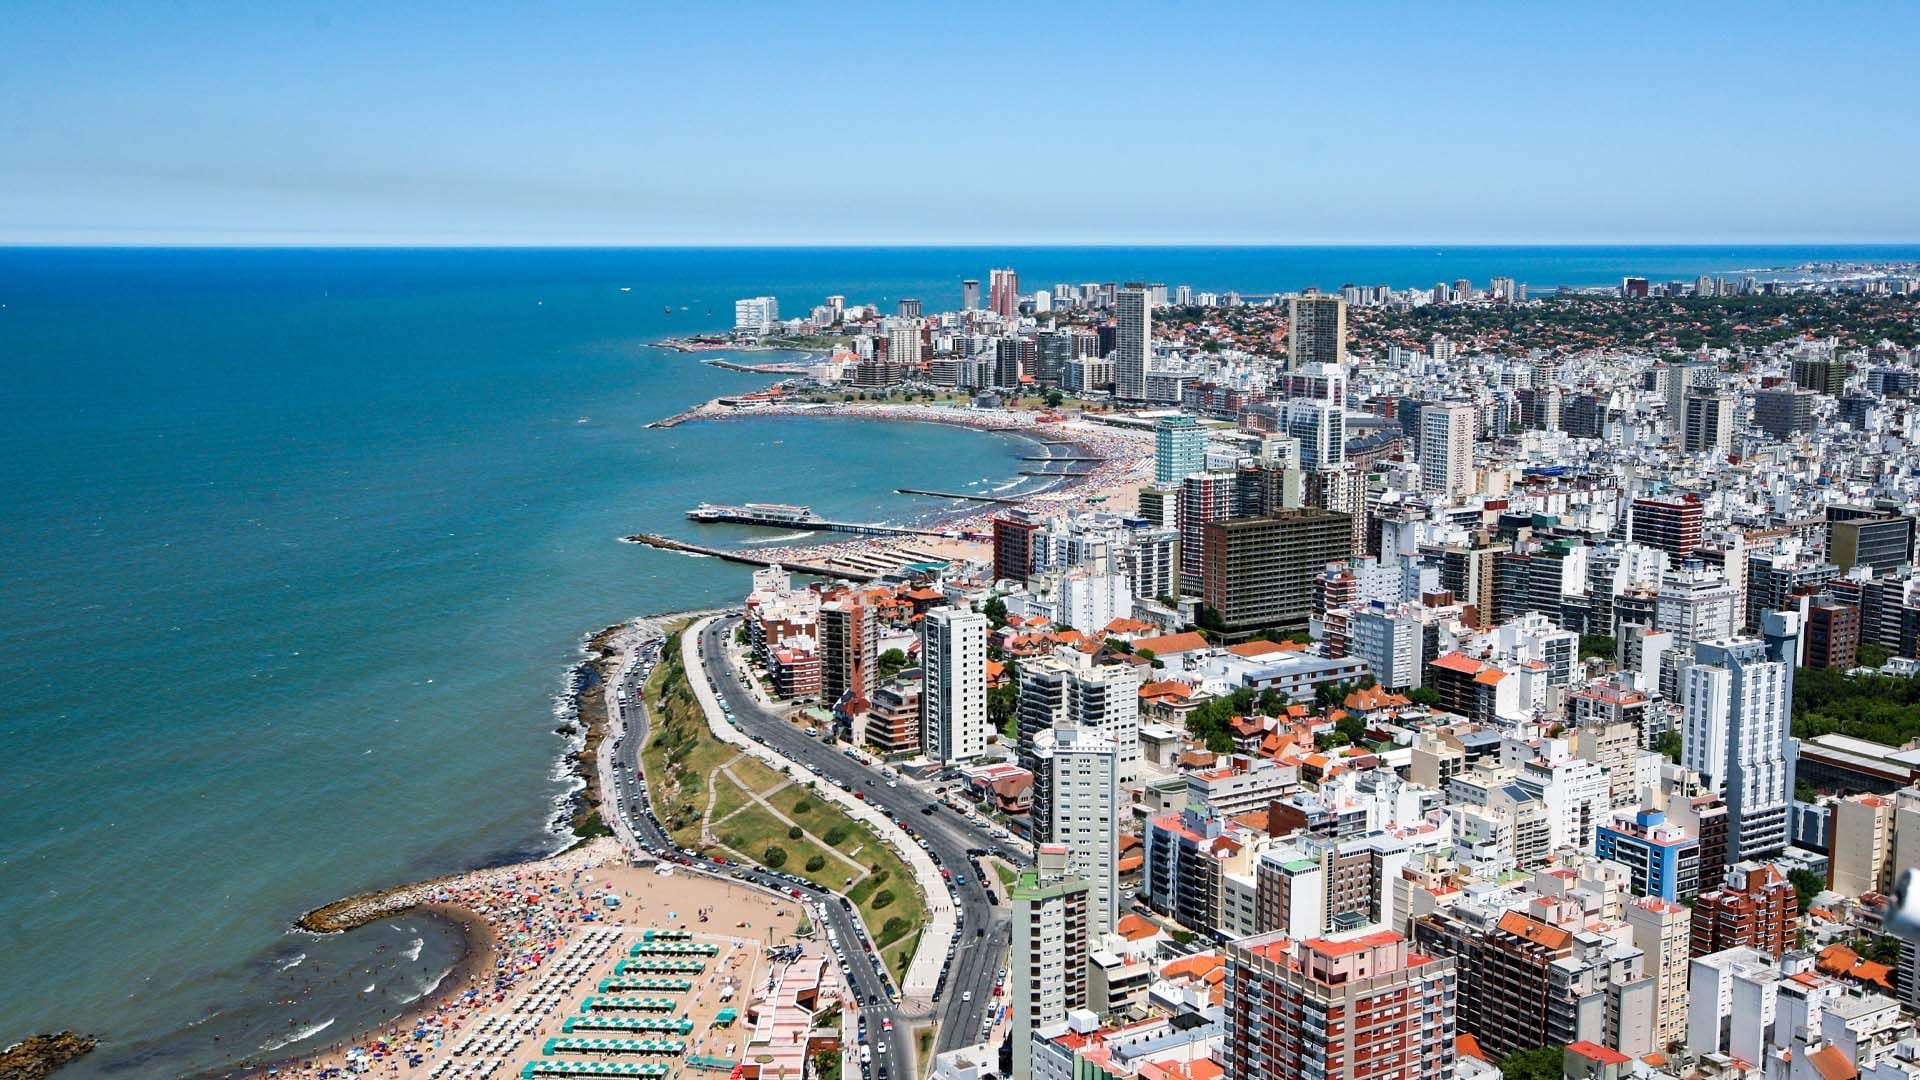 Las playas de la Costa Atlántica son los destinos preferidos por los argentinos para la temporada de verano, desde diciembre hasta mediados de marzo (Visit Argentina)